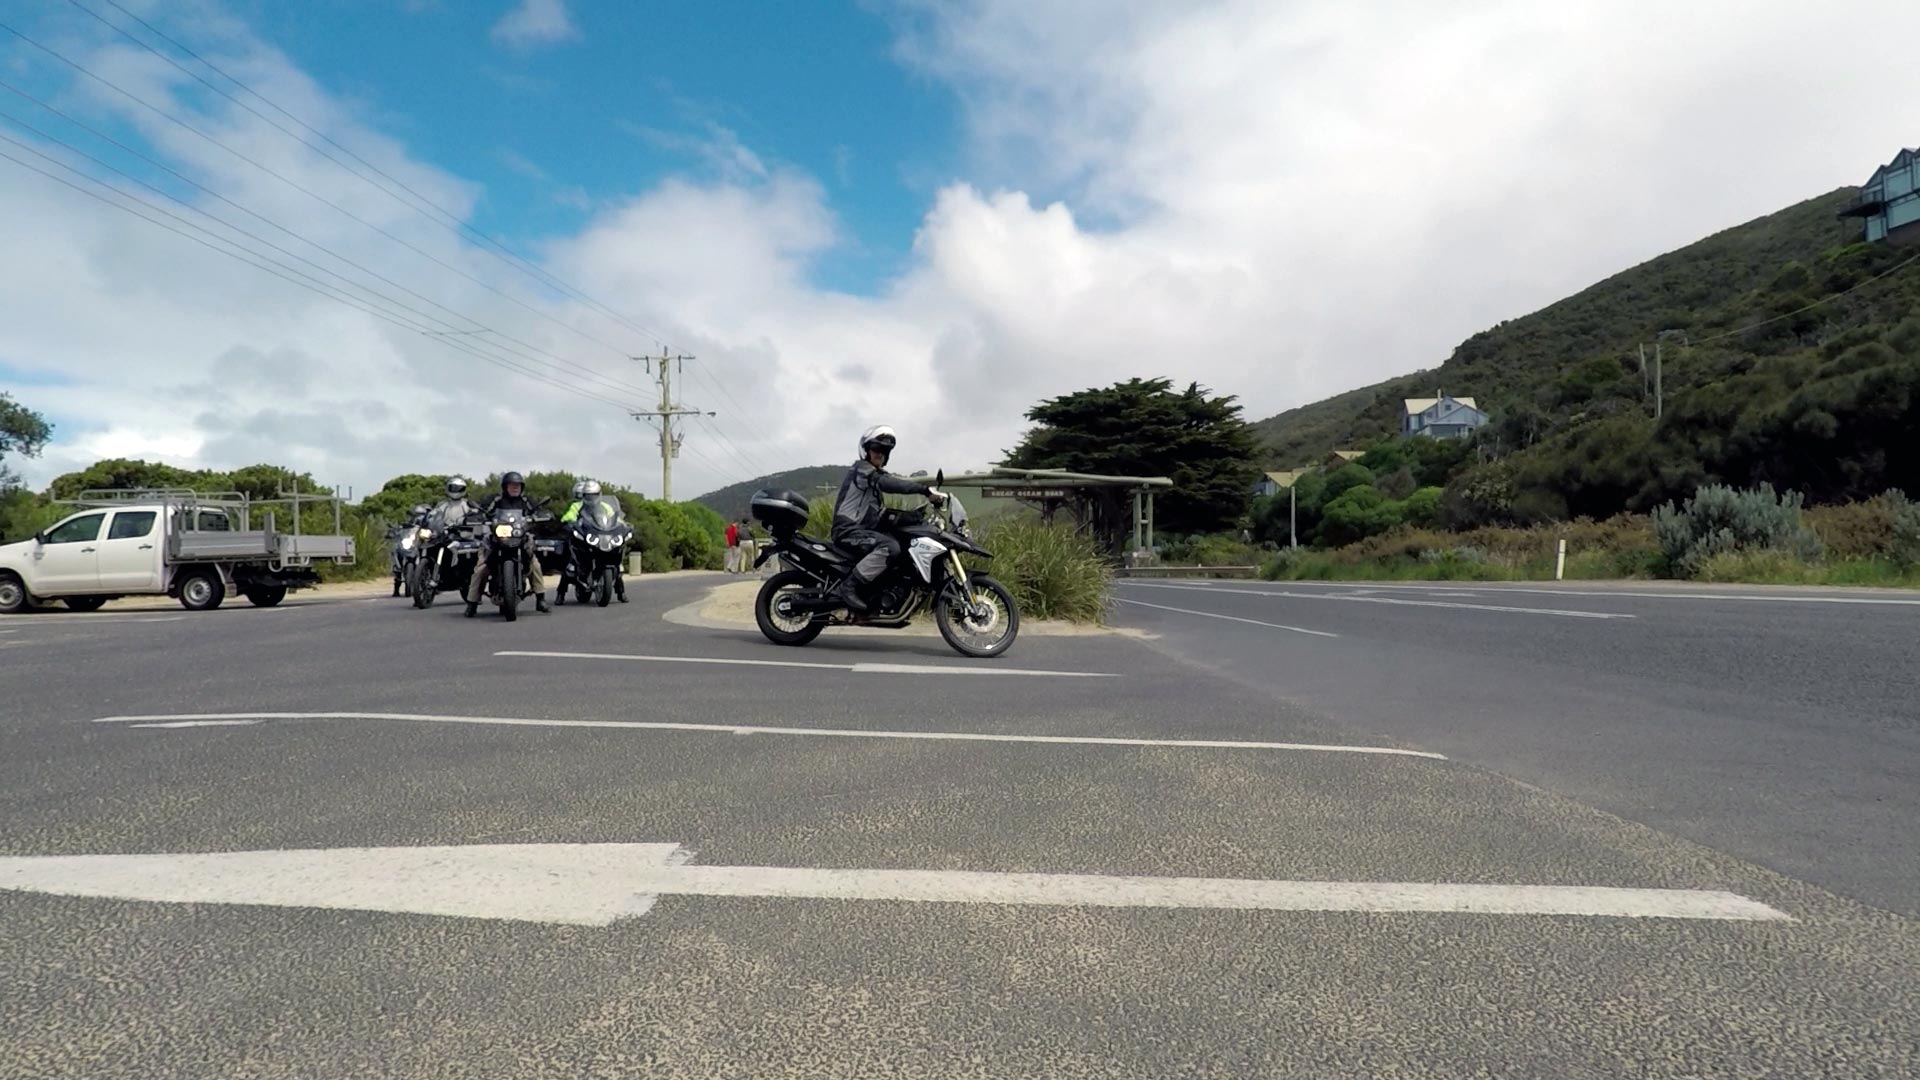 Australia Tasmania 2017, Motorcycle Tour in Australia, Day 2, Arrival in Melbourne